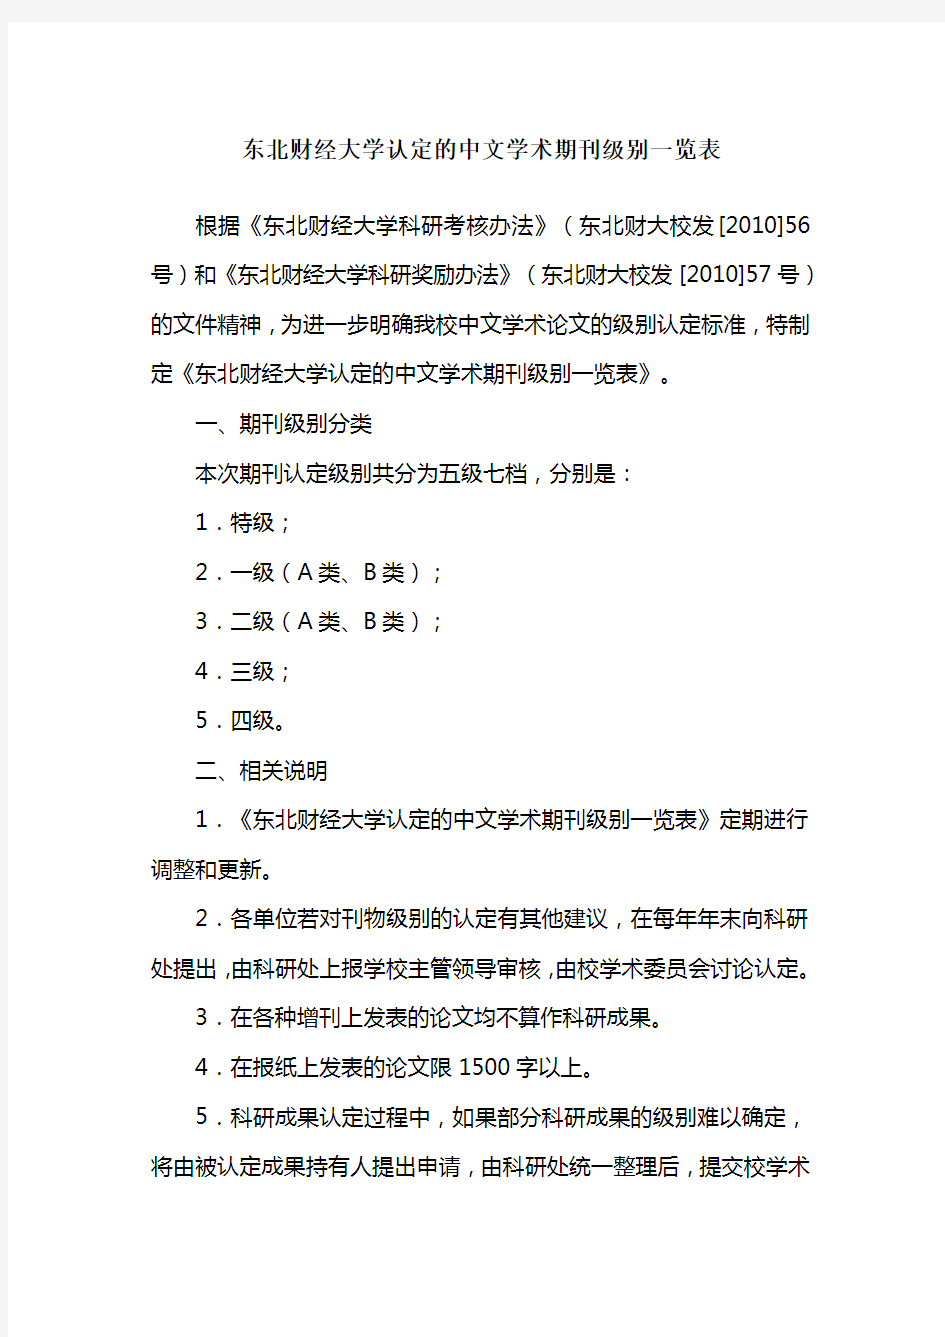 东北财经大学认定的中文学术期刊级别一览表